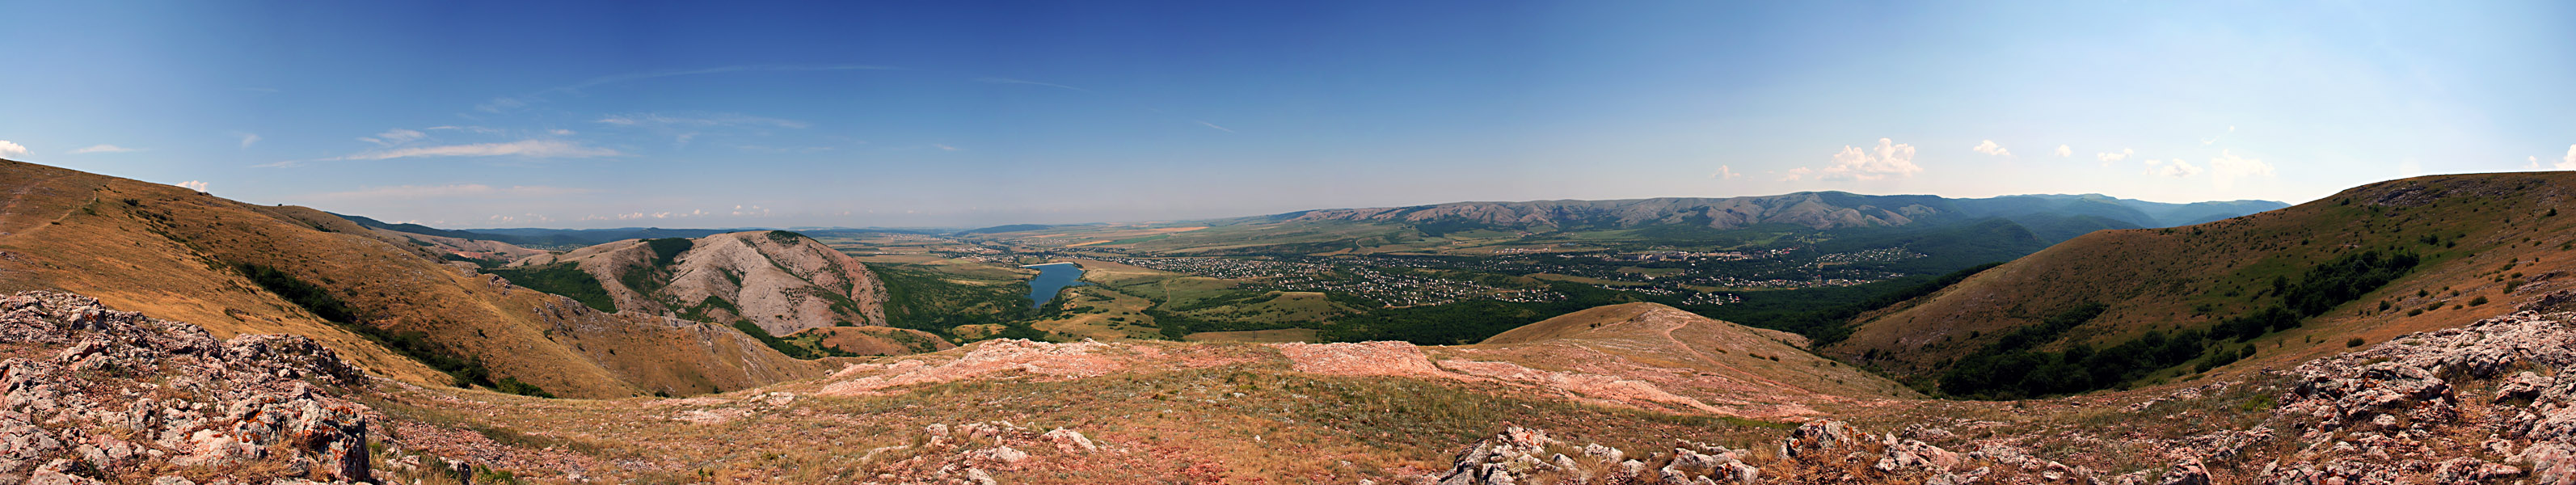 Вид на Перевальное с нижнего плато - Украина фото #2971